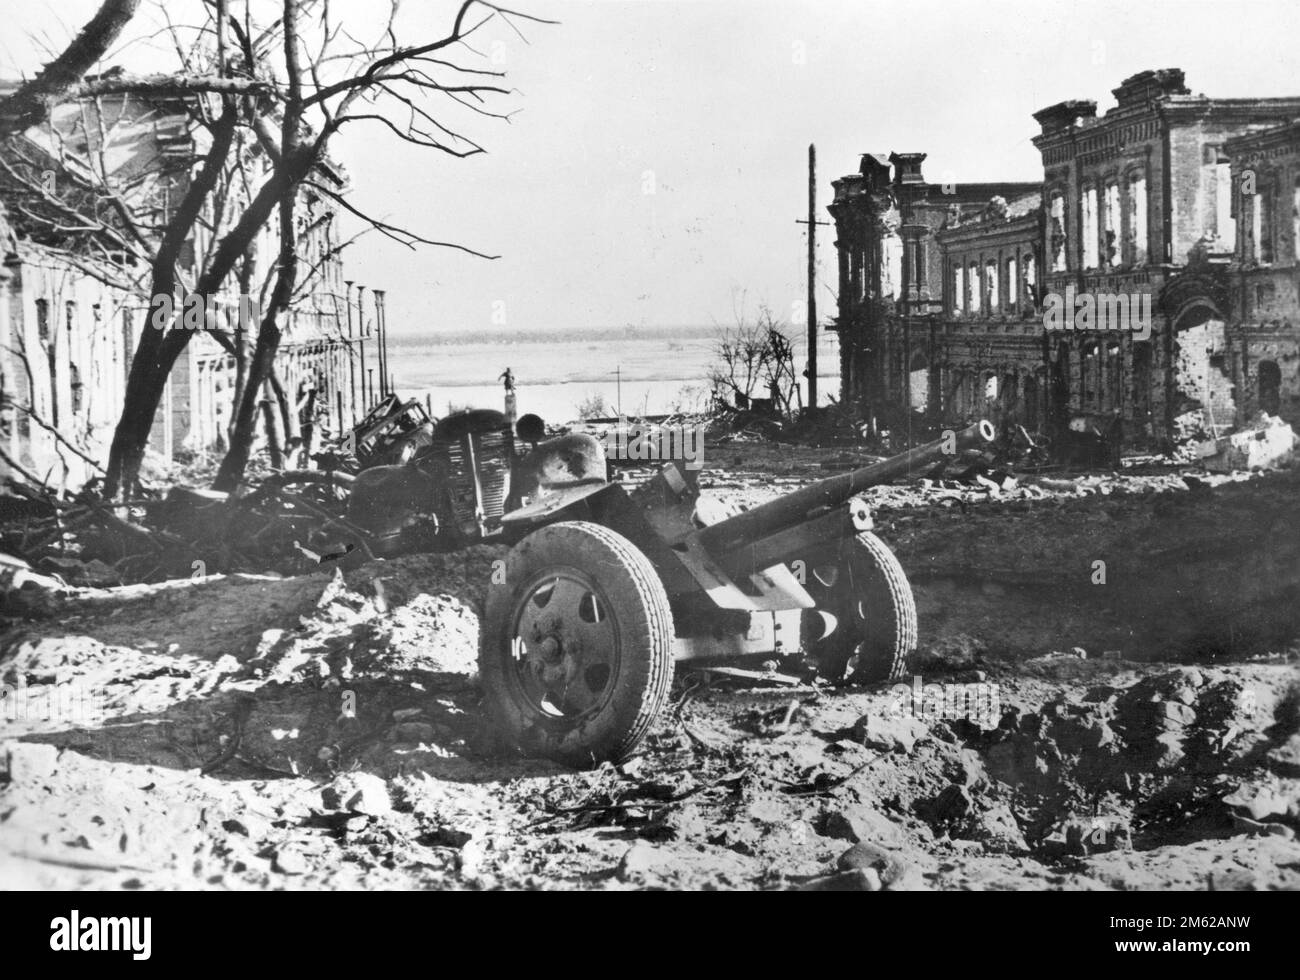 Distrutto cannone sovietico e veicolo militare a Stalingrado sulle rive del fiume Volga durante la battaglia di Stalingrado Foto Stock